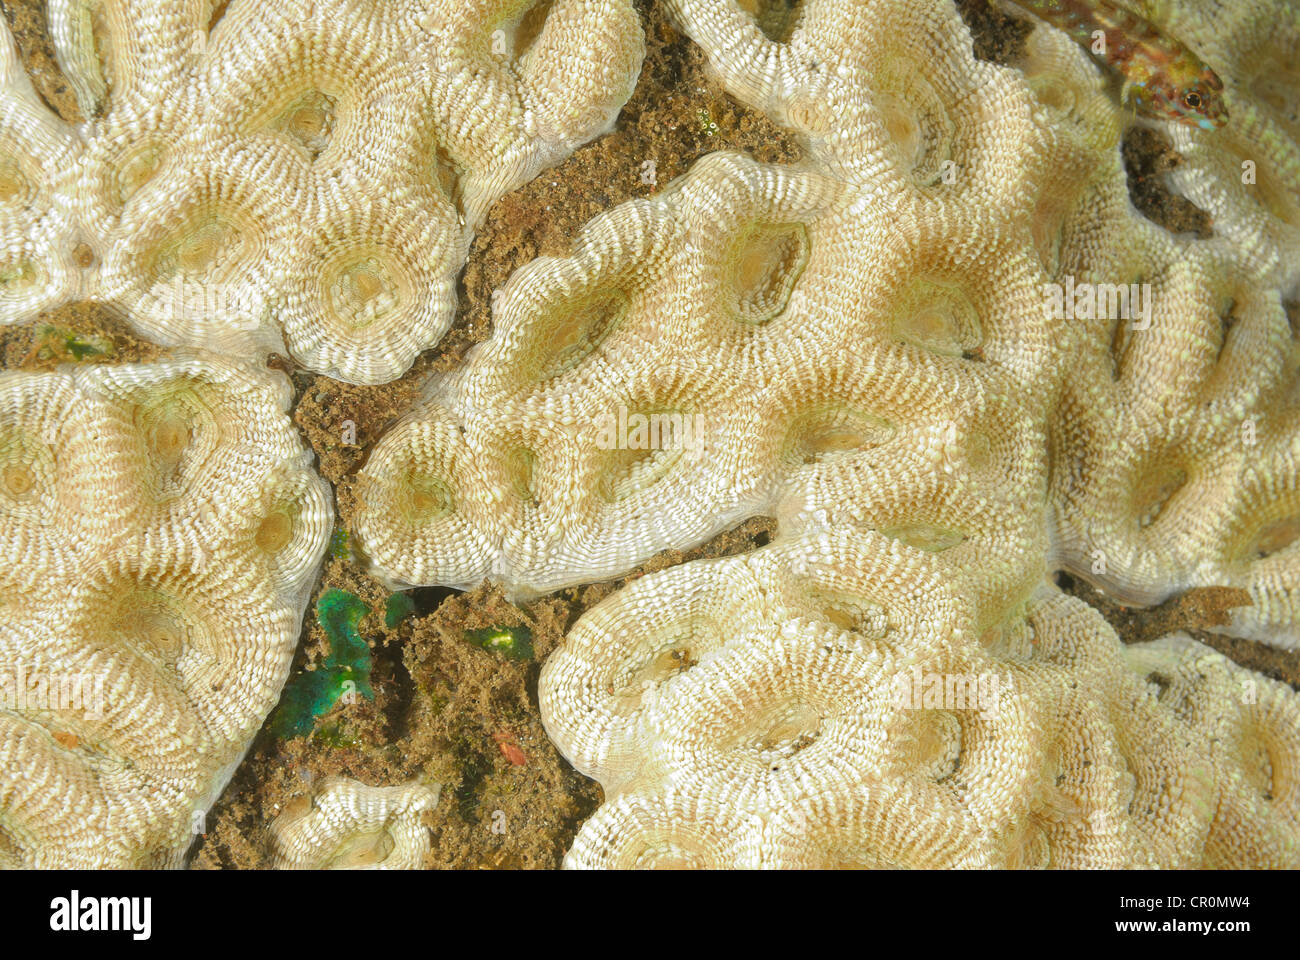 Brain coral Favia sp., Tulamben, Bali, Indonesia, Indo-pacific Ocean Stock Photo